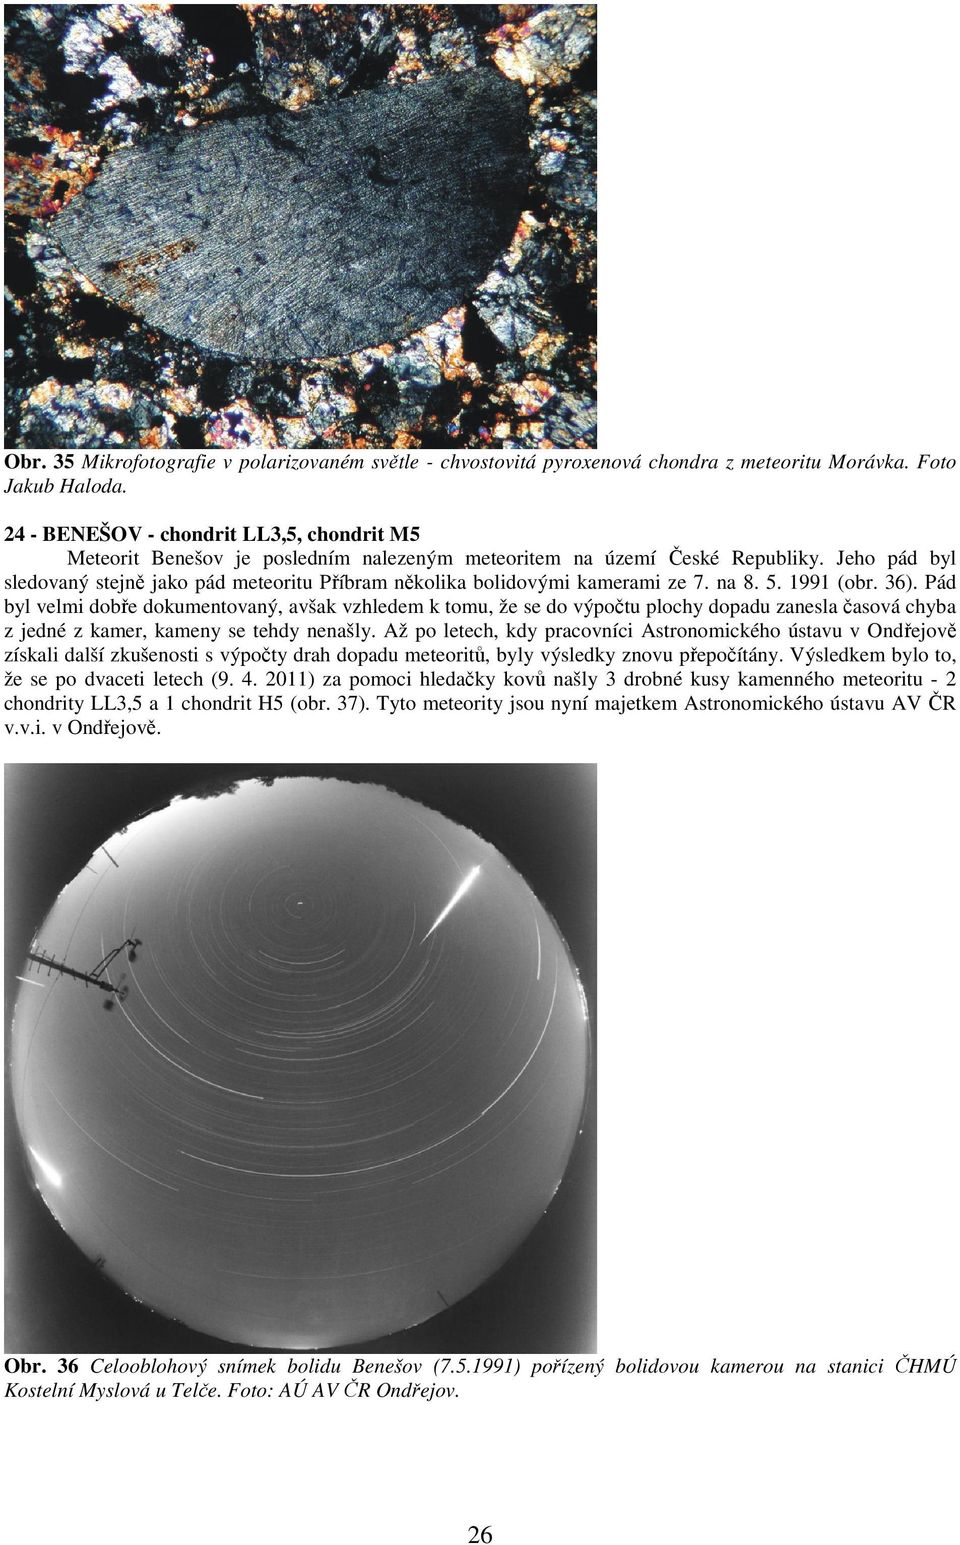 Jeho pád byl sledovaný stejně jako pád meteoritu Příbram několika bolidovými kamerami ze 7. na 8. 5. 1991 (obr. 36).